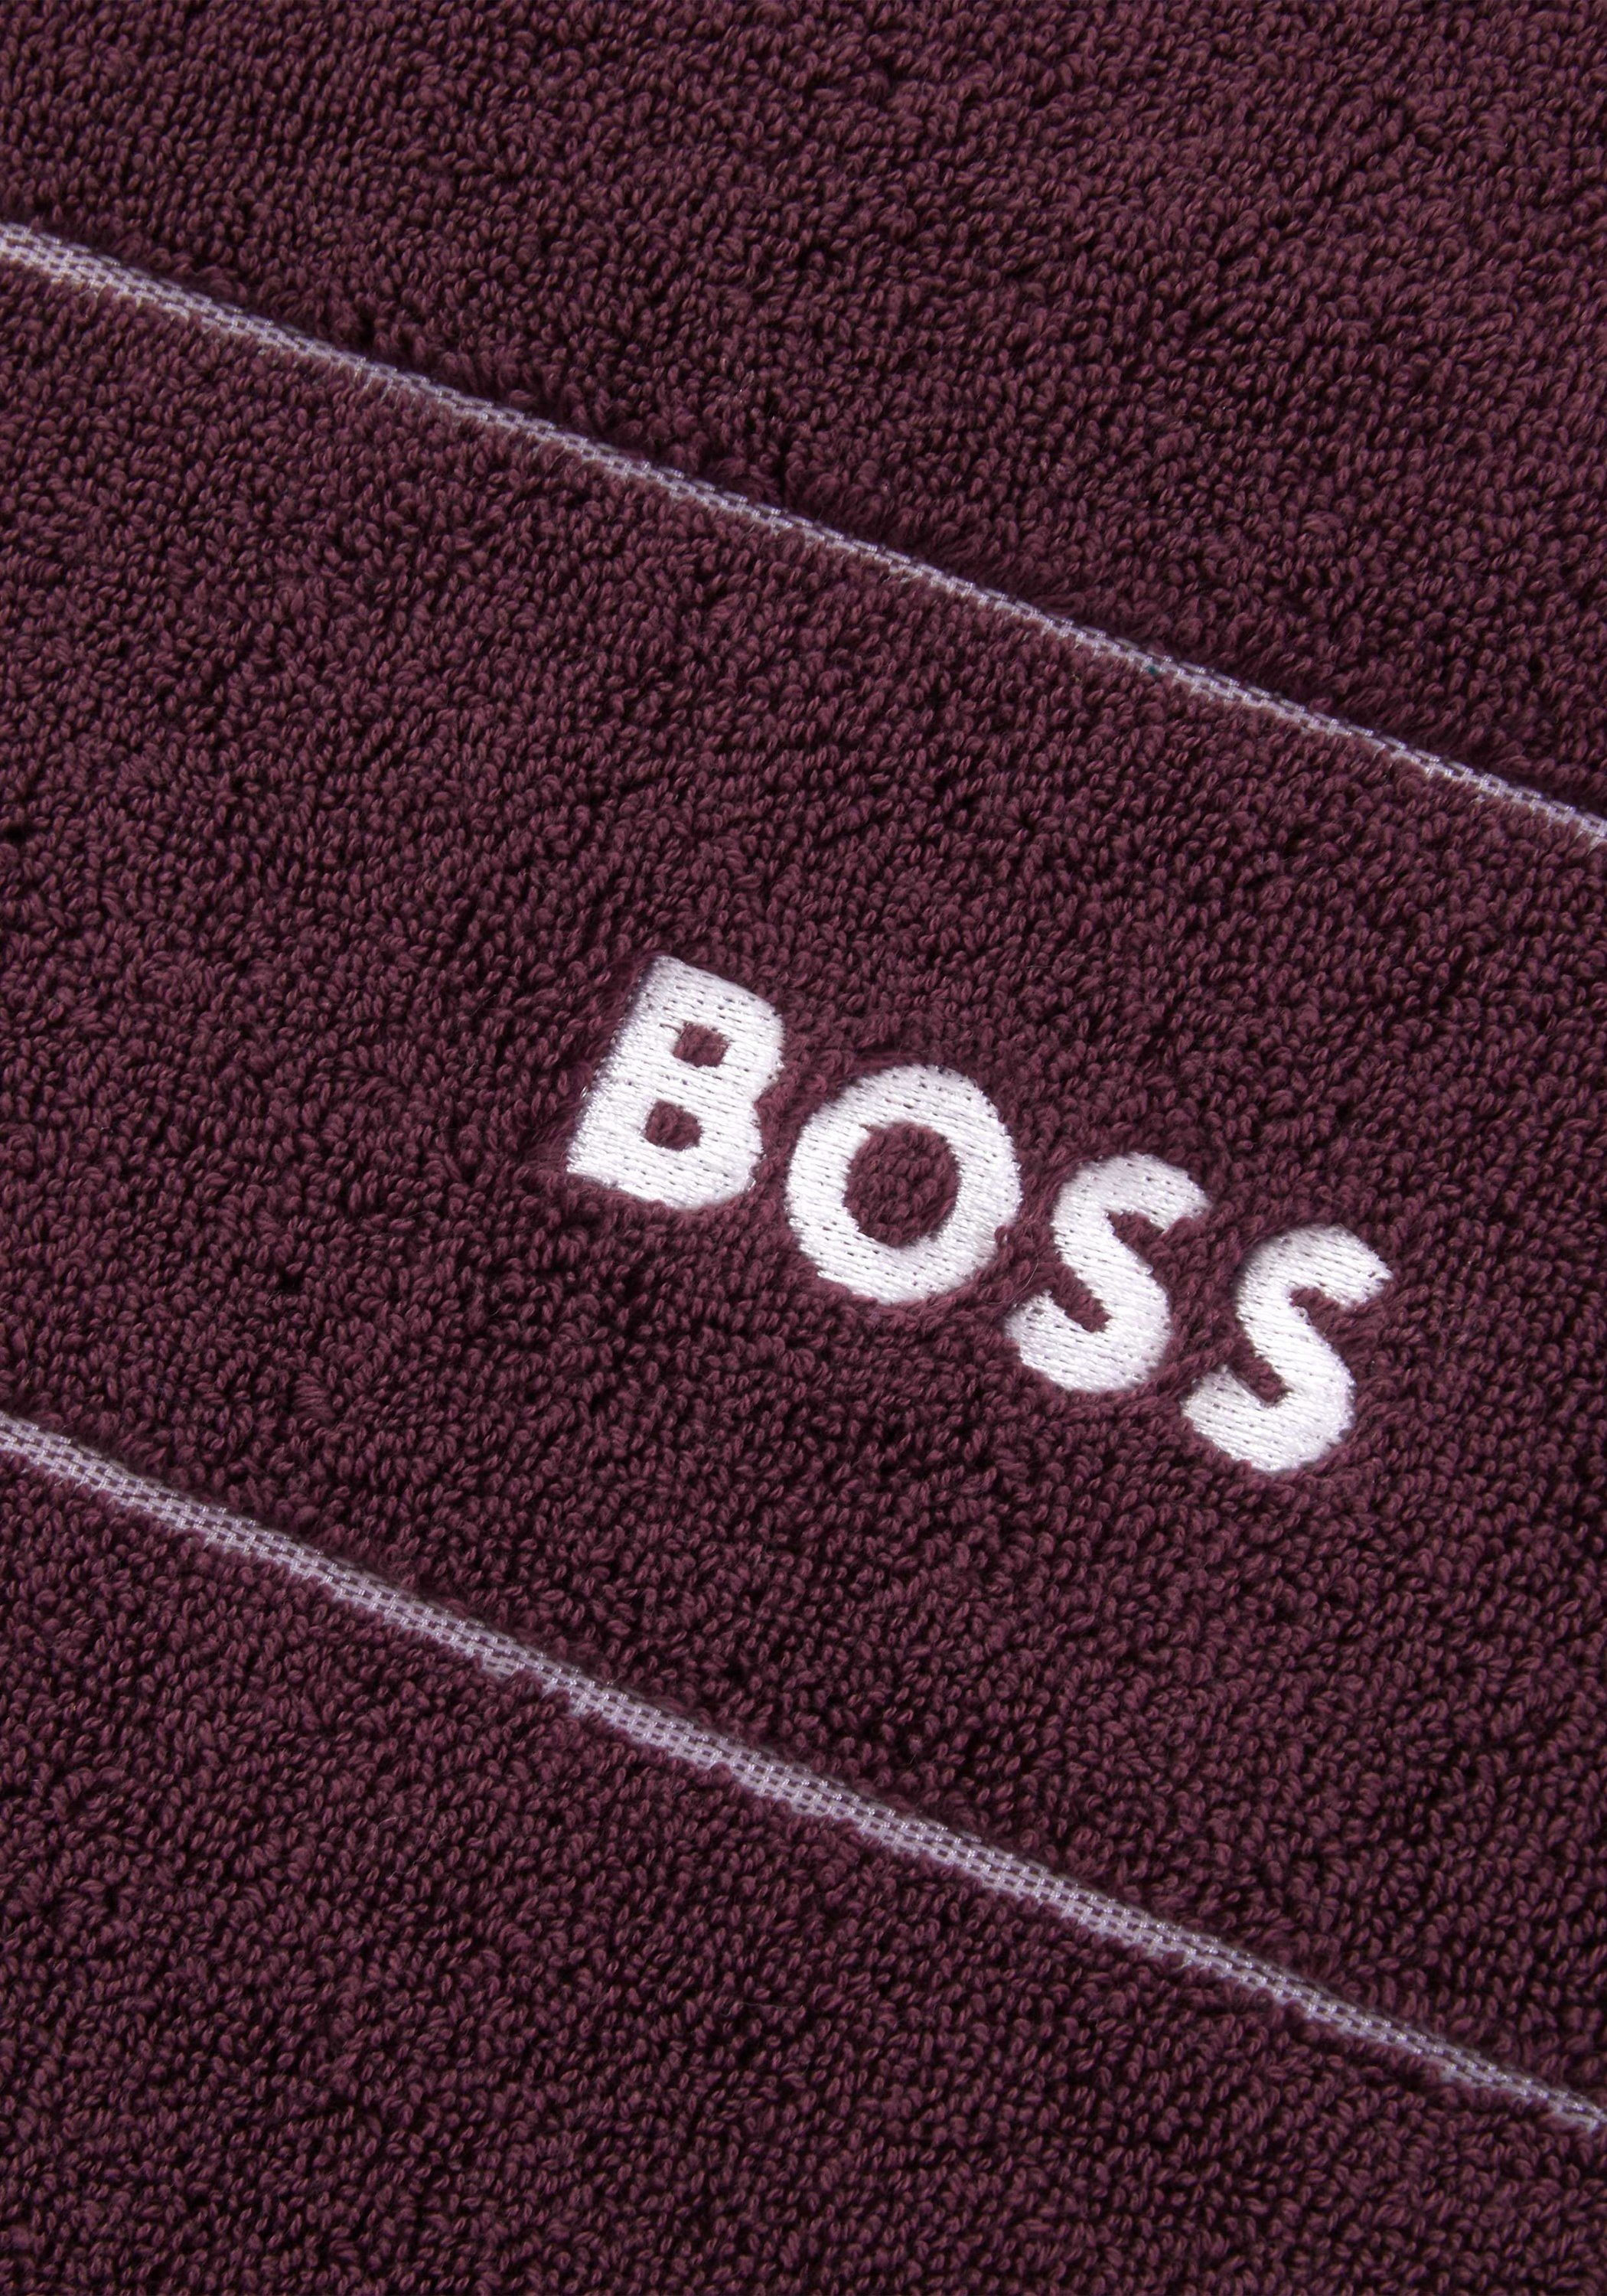 Hugo Boss Home Gästehandtücher PLAIN Baumwolle, BURGUNN mit modernem 100% Design (2tlg)